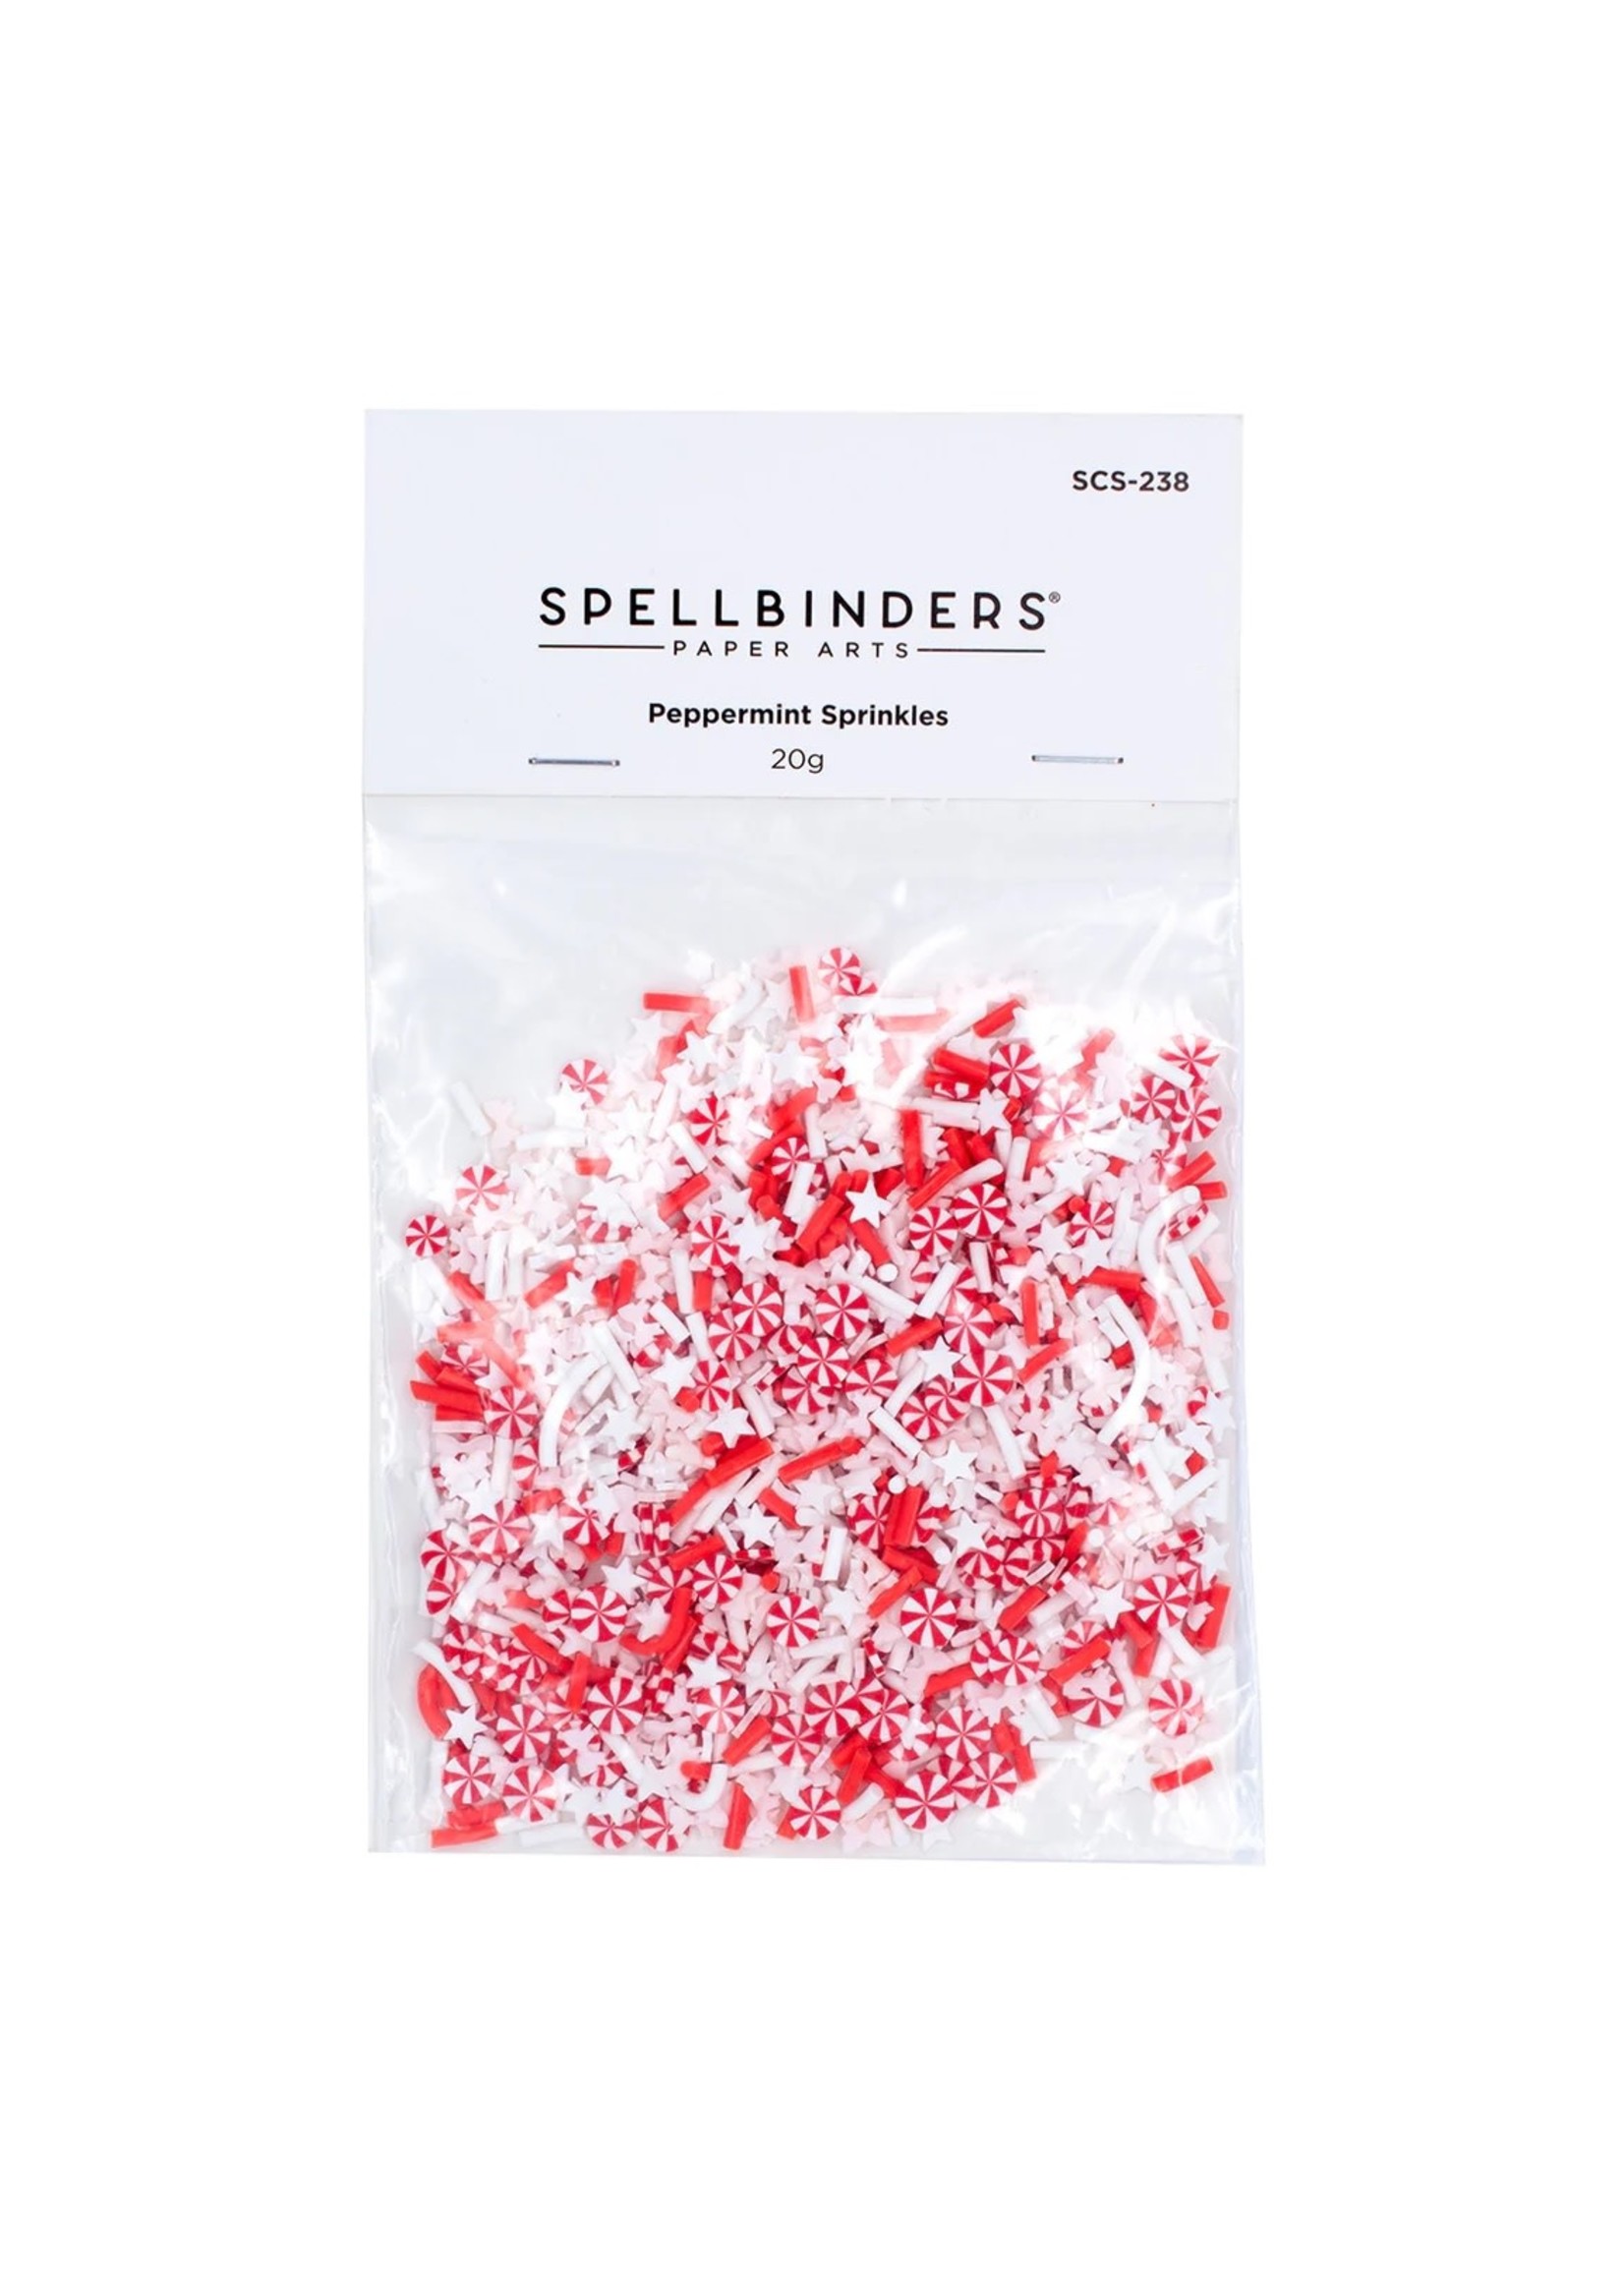 spellbinders Peppermint Sprinkles